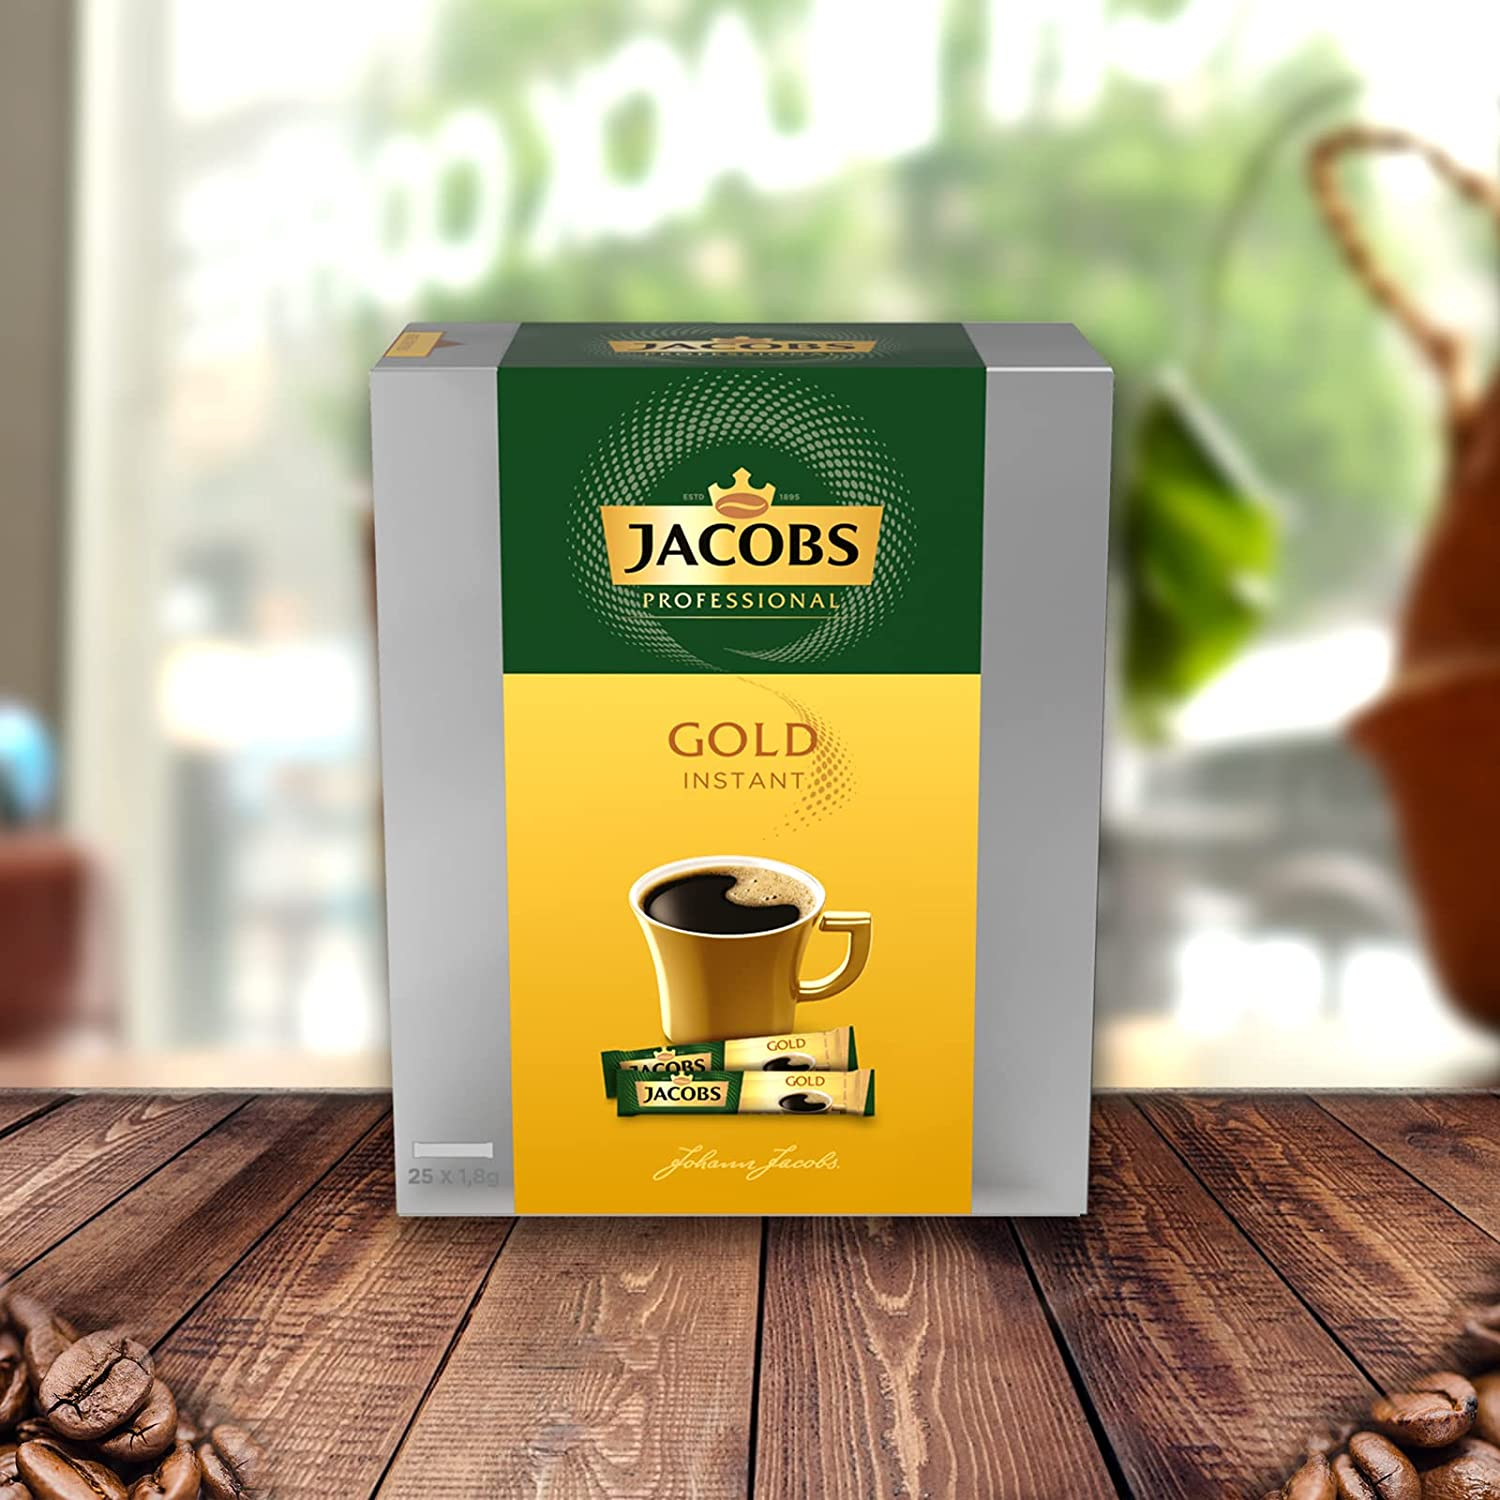 JACOBS Professional löslicher Gold 25 Heißgetränkeautomaten) Instantkaffee (In heißem Kaffee x 8 Wasser auflösen, Sticks